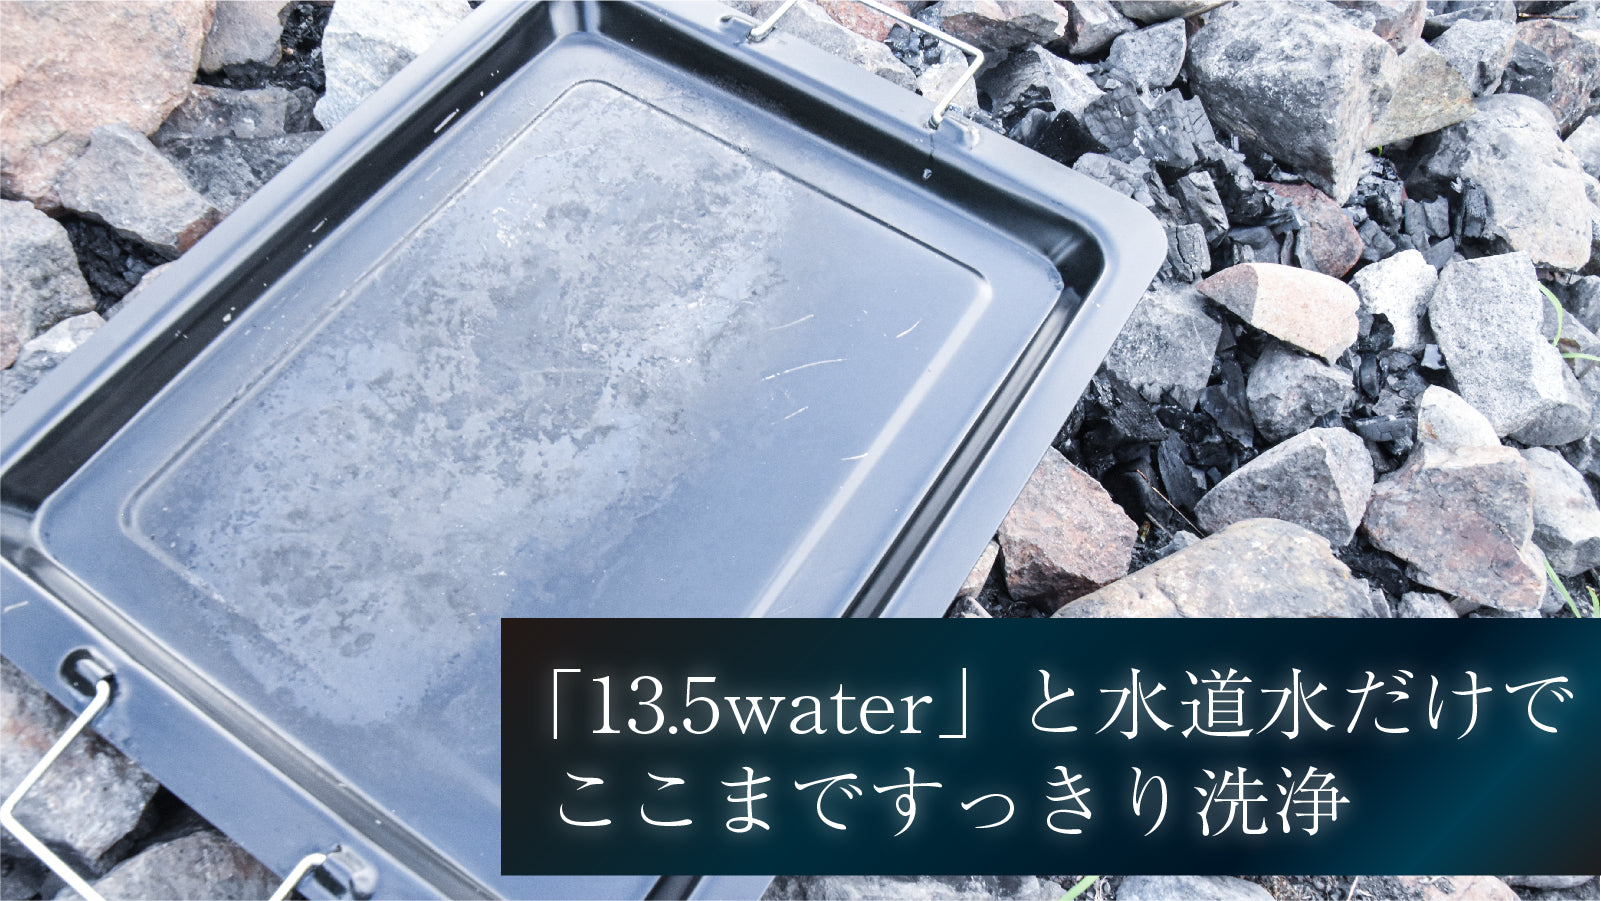 13.5water【300ml】